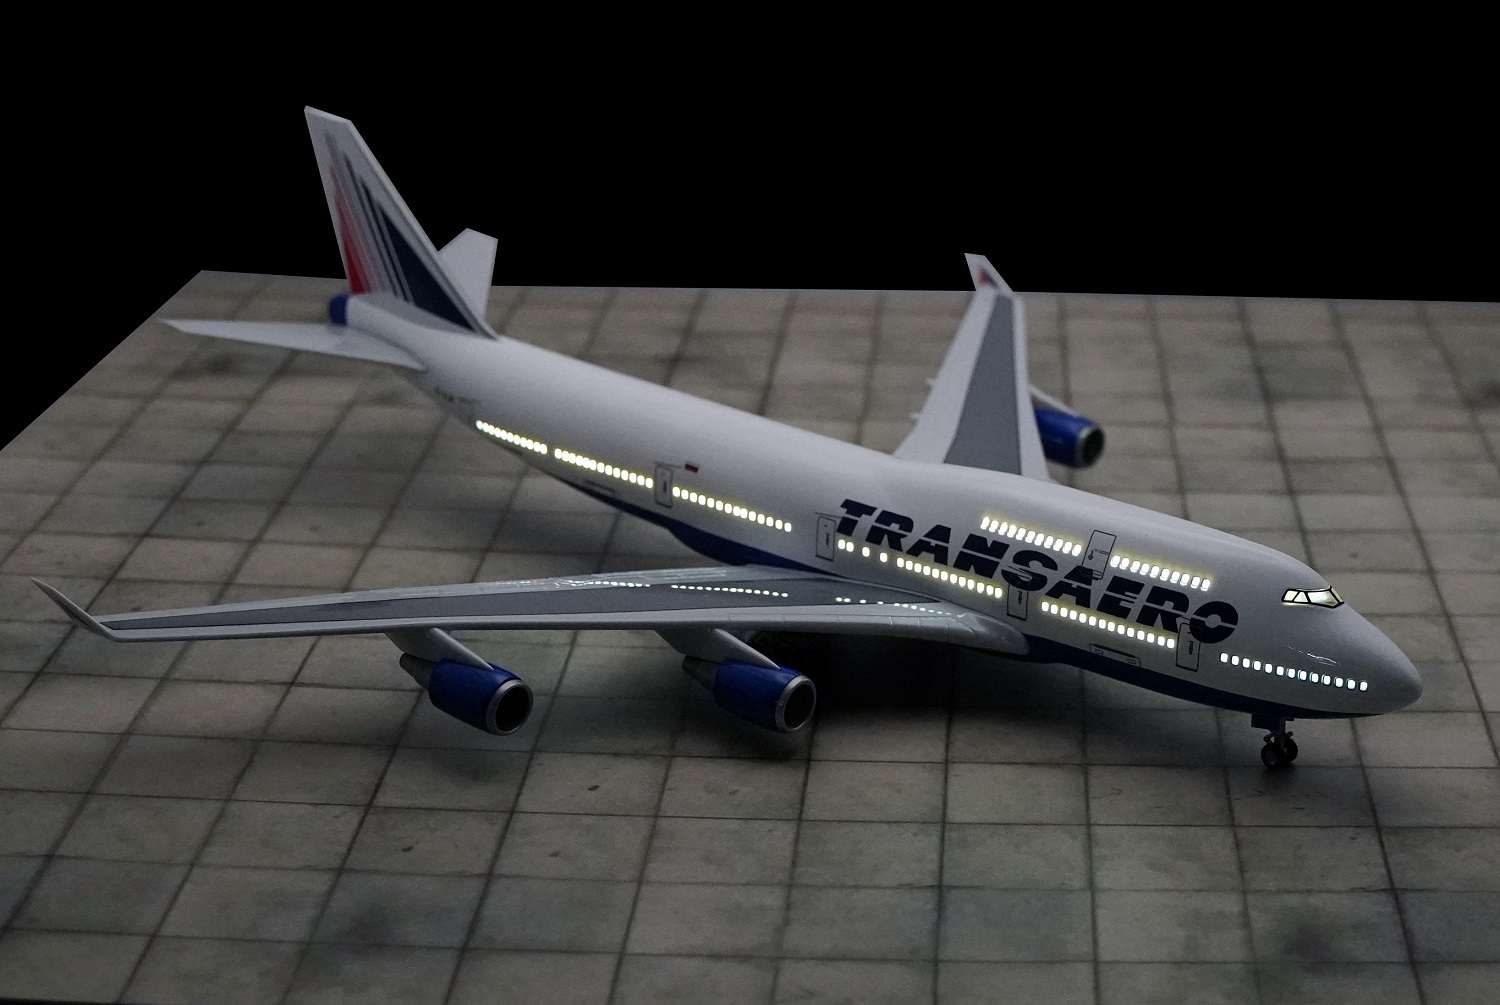    747    .  47 . # 9 hobbyplus.ru